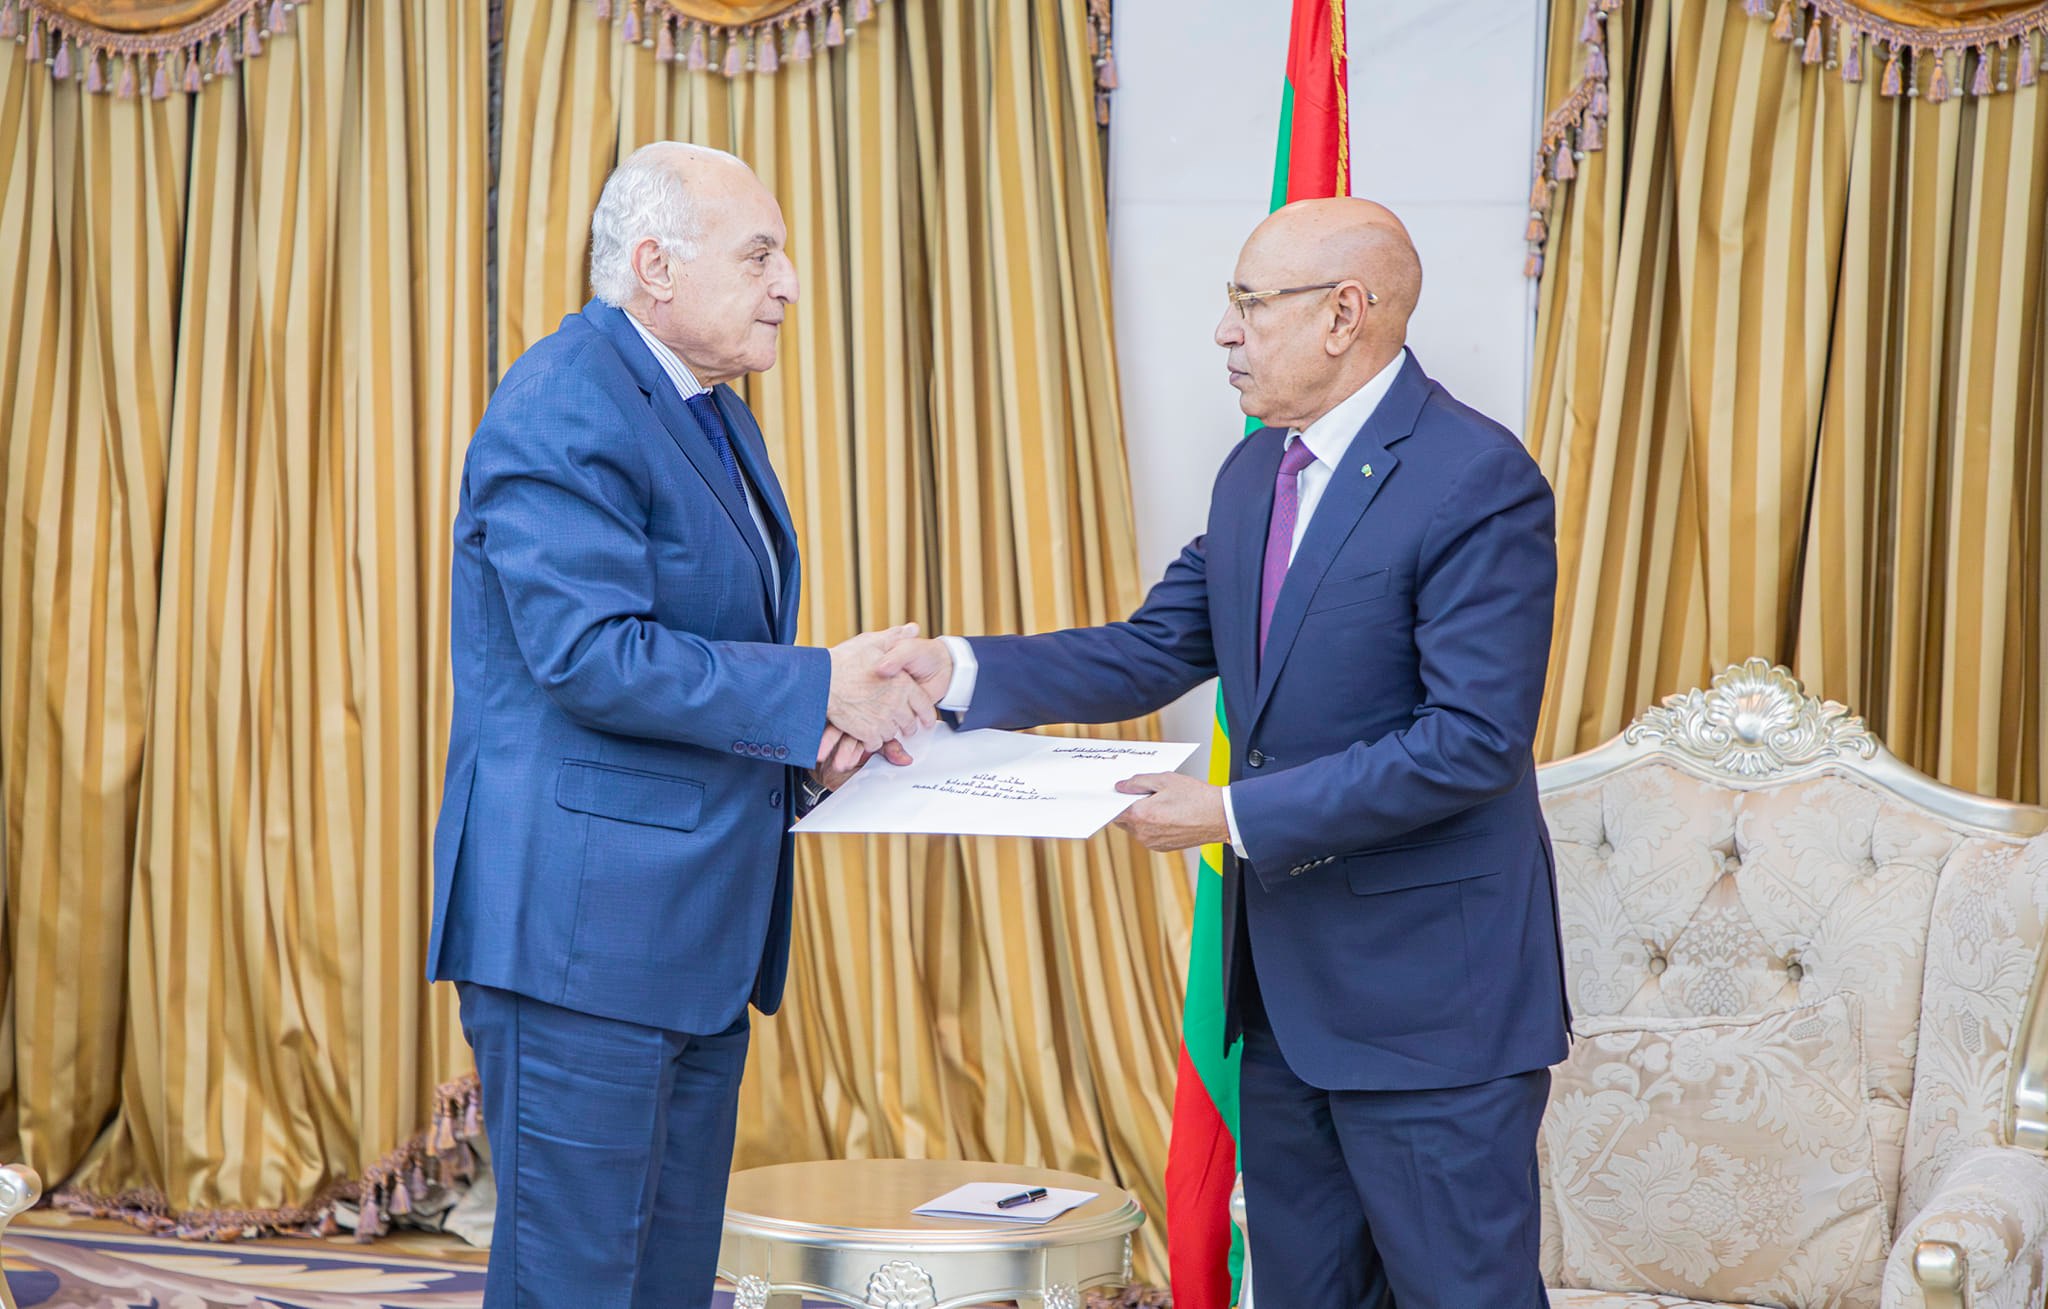 Le ministre des affaires etrangeres remet un message écrit du président de la République au président mauritanien